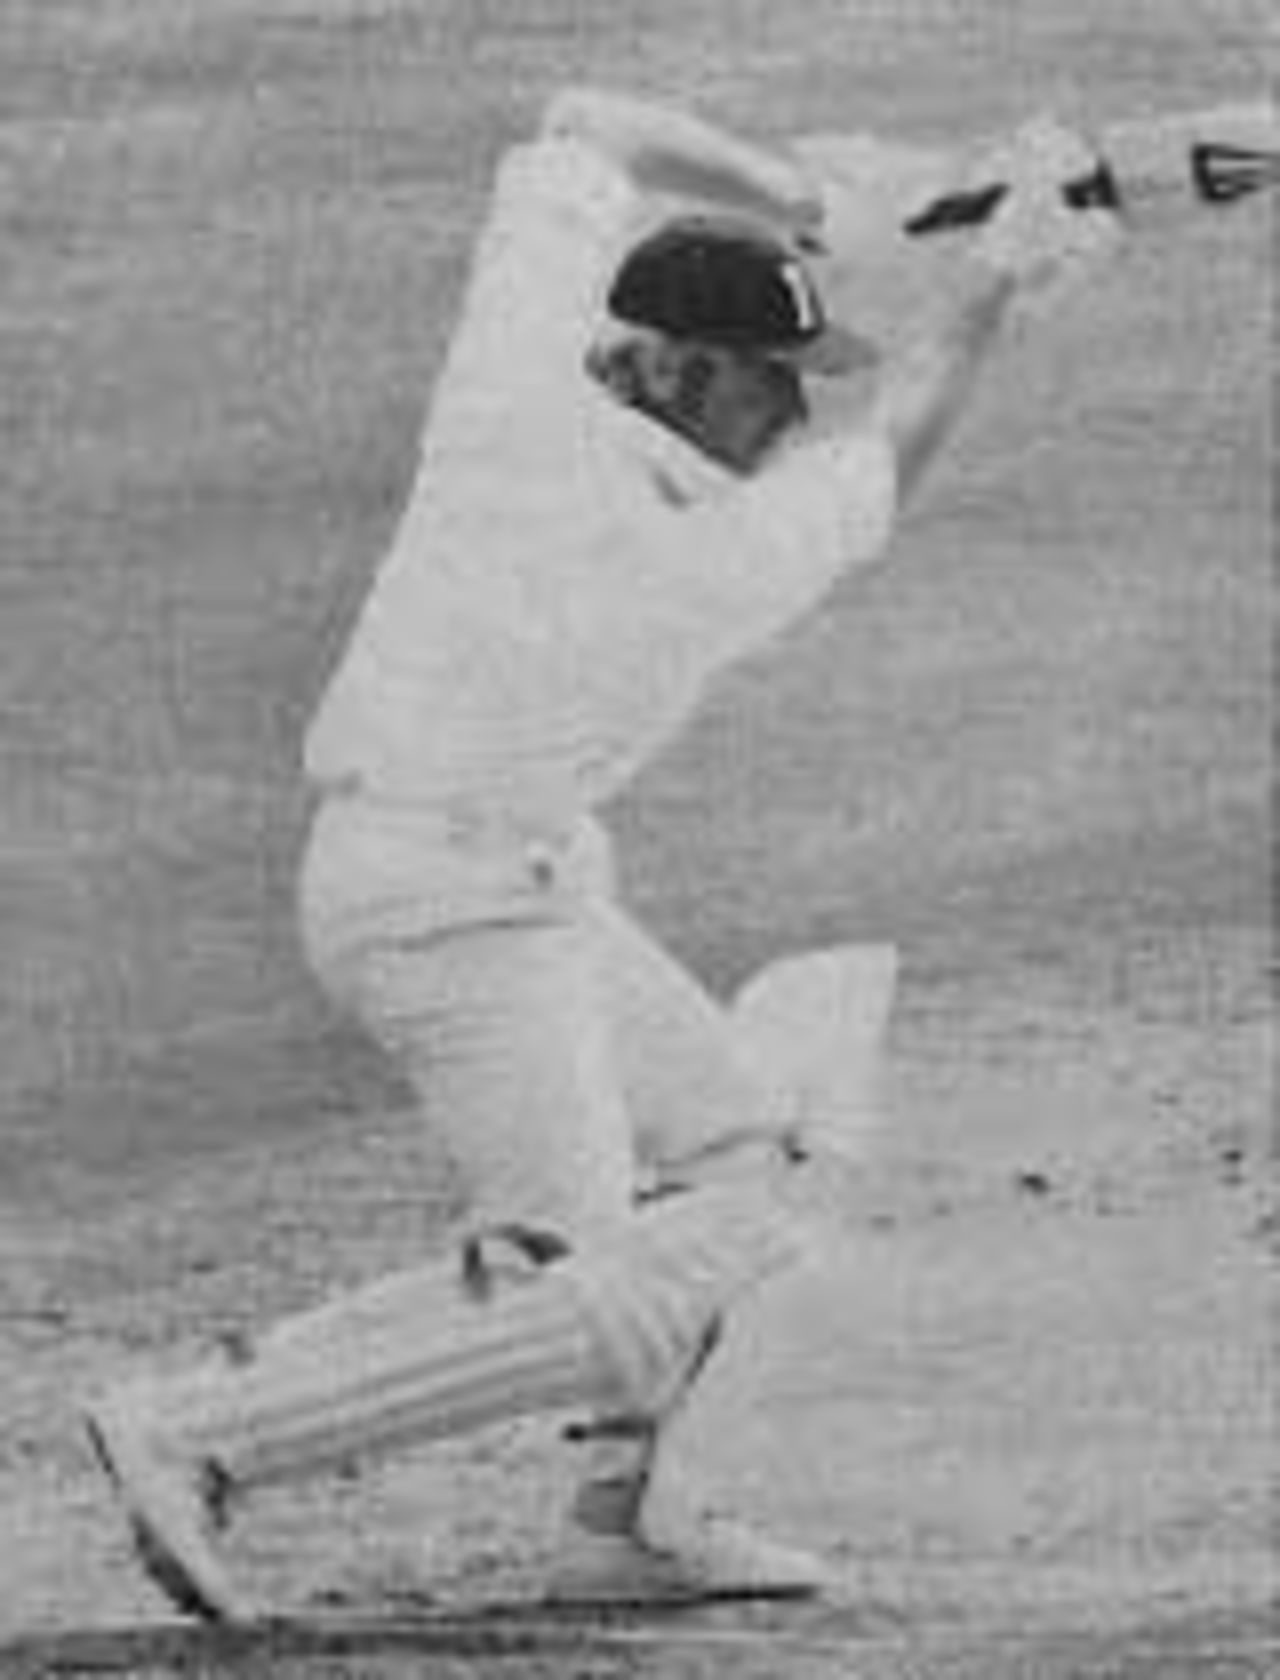 Barry Wood batting